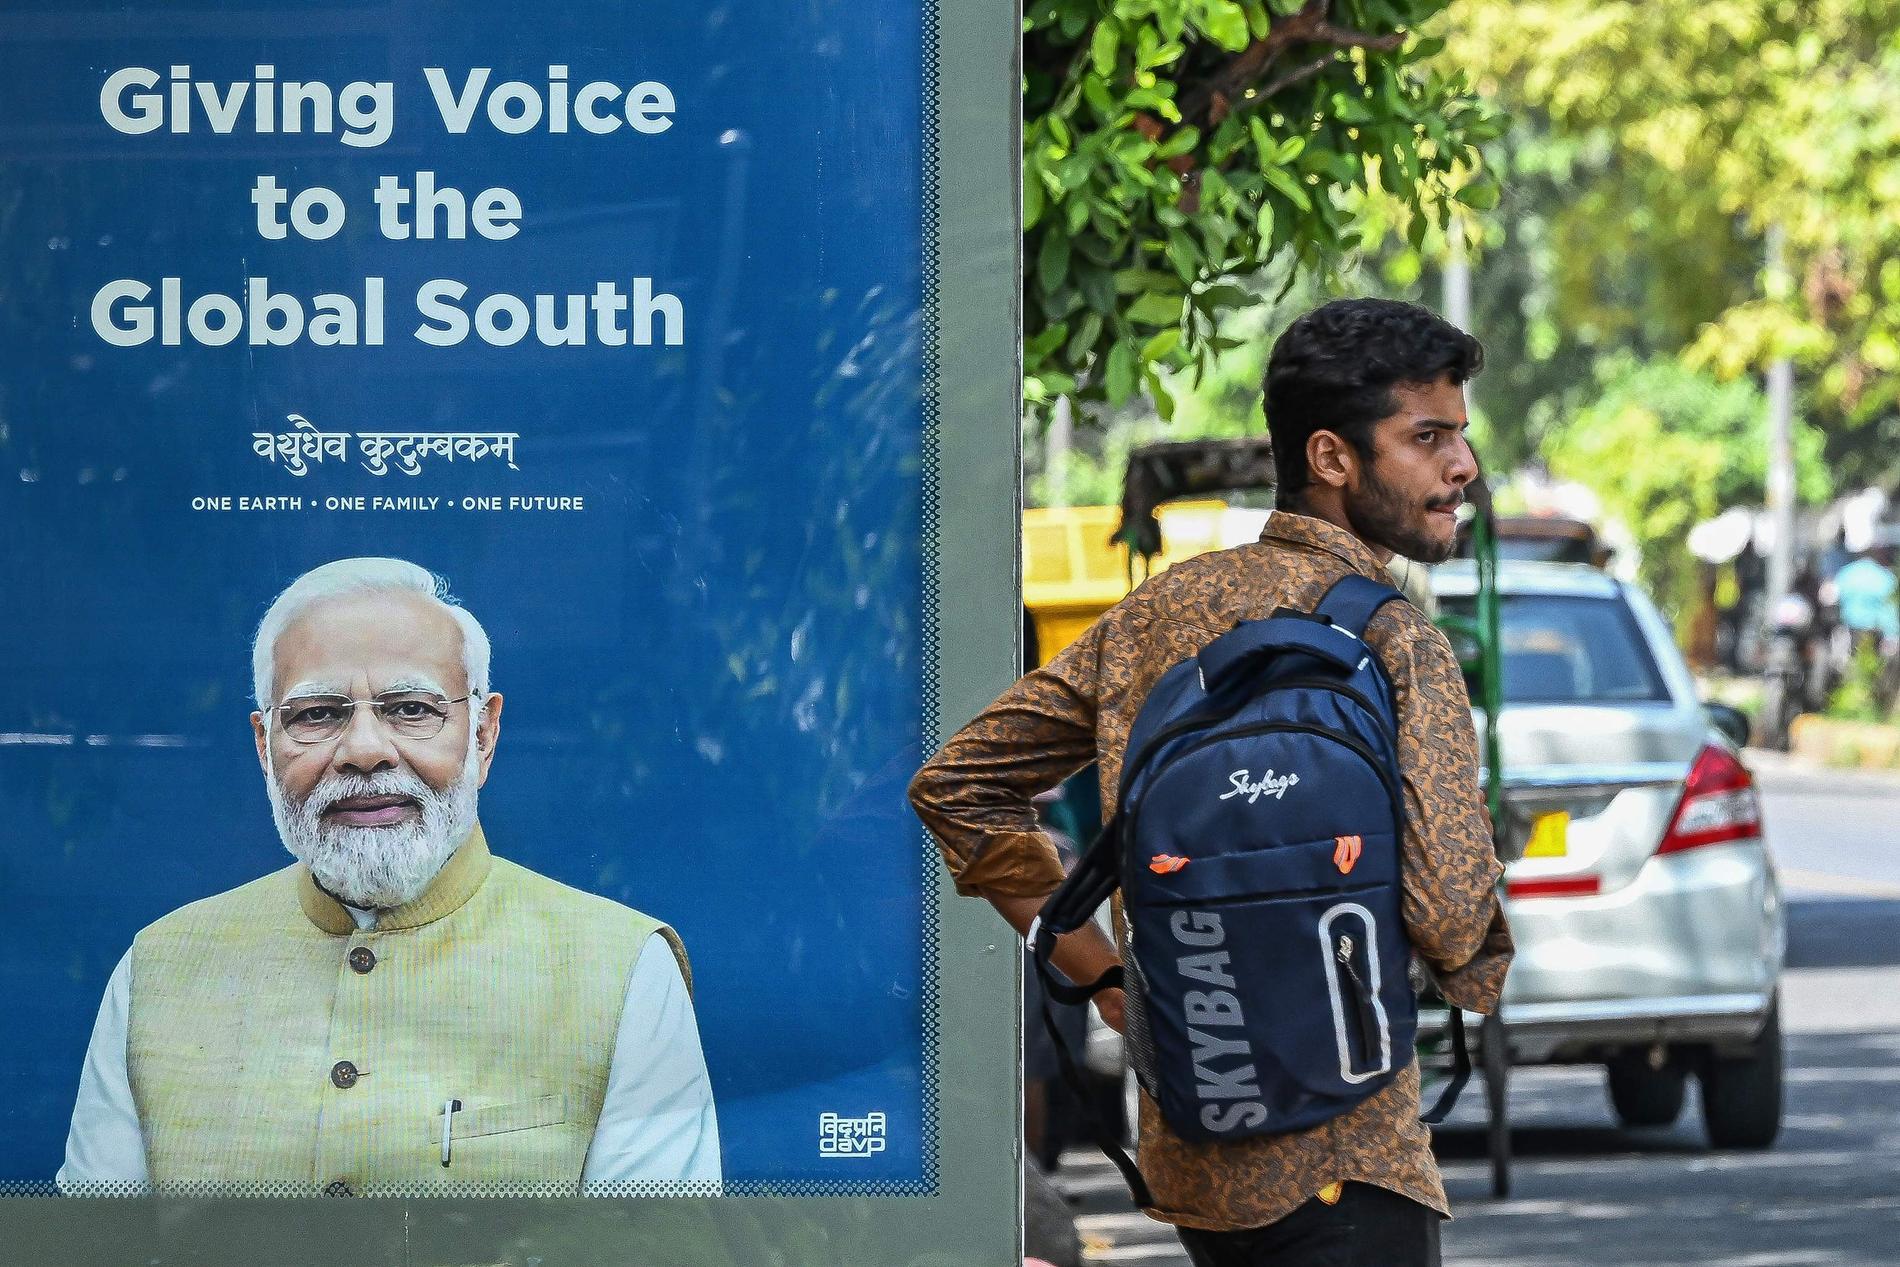 Portavoce del Sud: Un passante passa davanti a una foto del primo ministro Narendra Modi a Nuova Delhi.